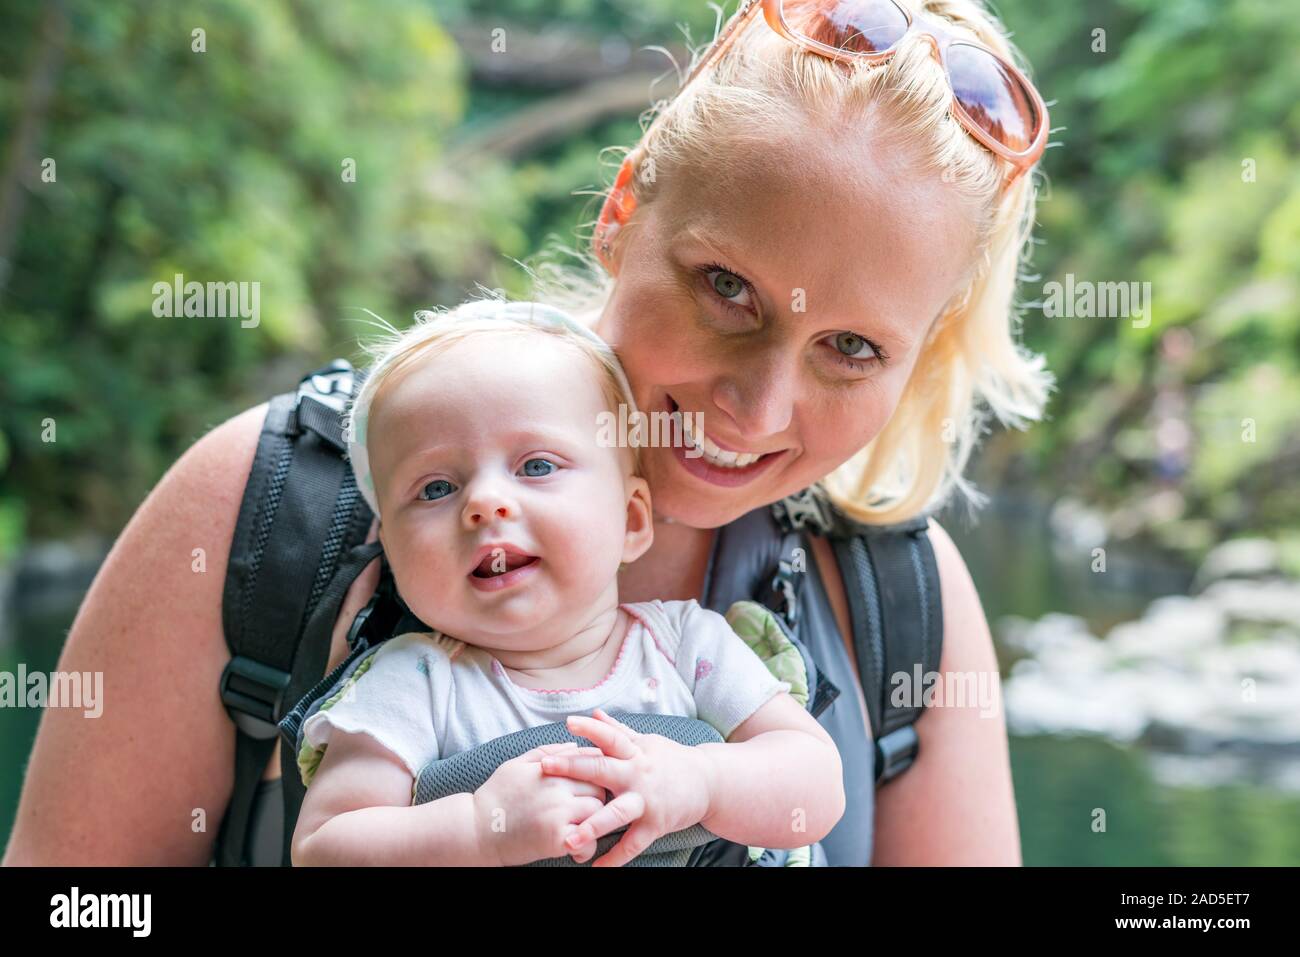 Heureux, smiling mother carrying baby enfant en écharpe, porte-bébé ergonomique. La marche à l'extérieur dans la nature en été. Banque D'Images